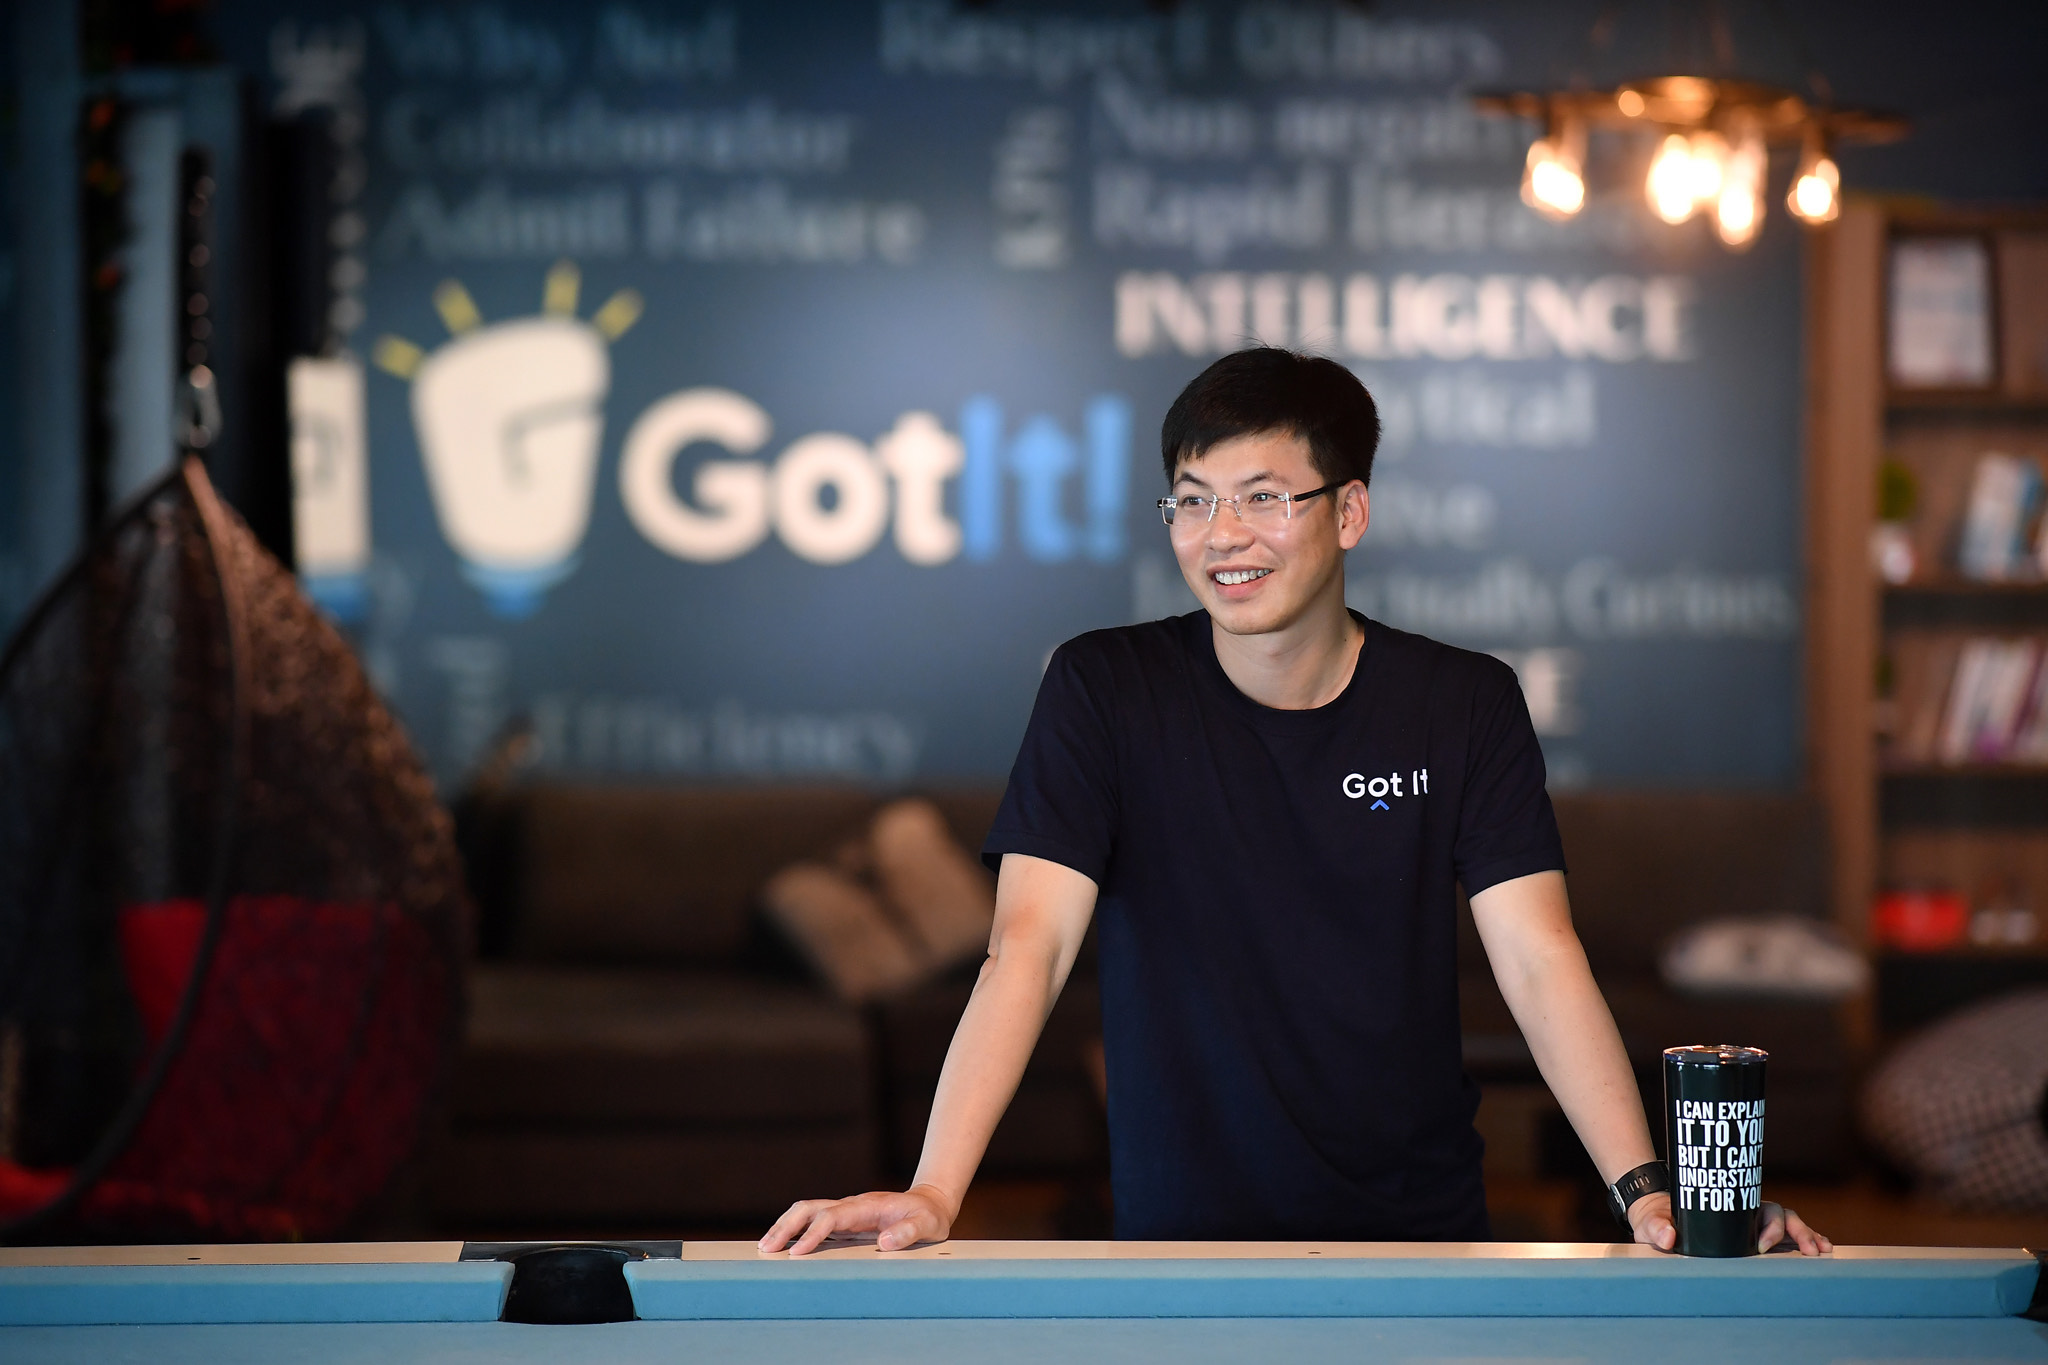 Hùng Trần Got It: Từ cậu sinh viên ‘vừa câm, vừa điếc’ trên đất Mỹ đến founder startup có triển vọng kỳ lân ở Silicon Valley - Ảnh 16.